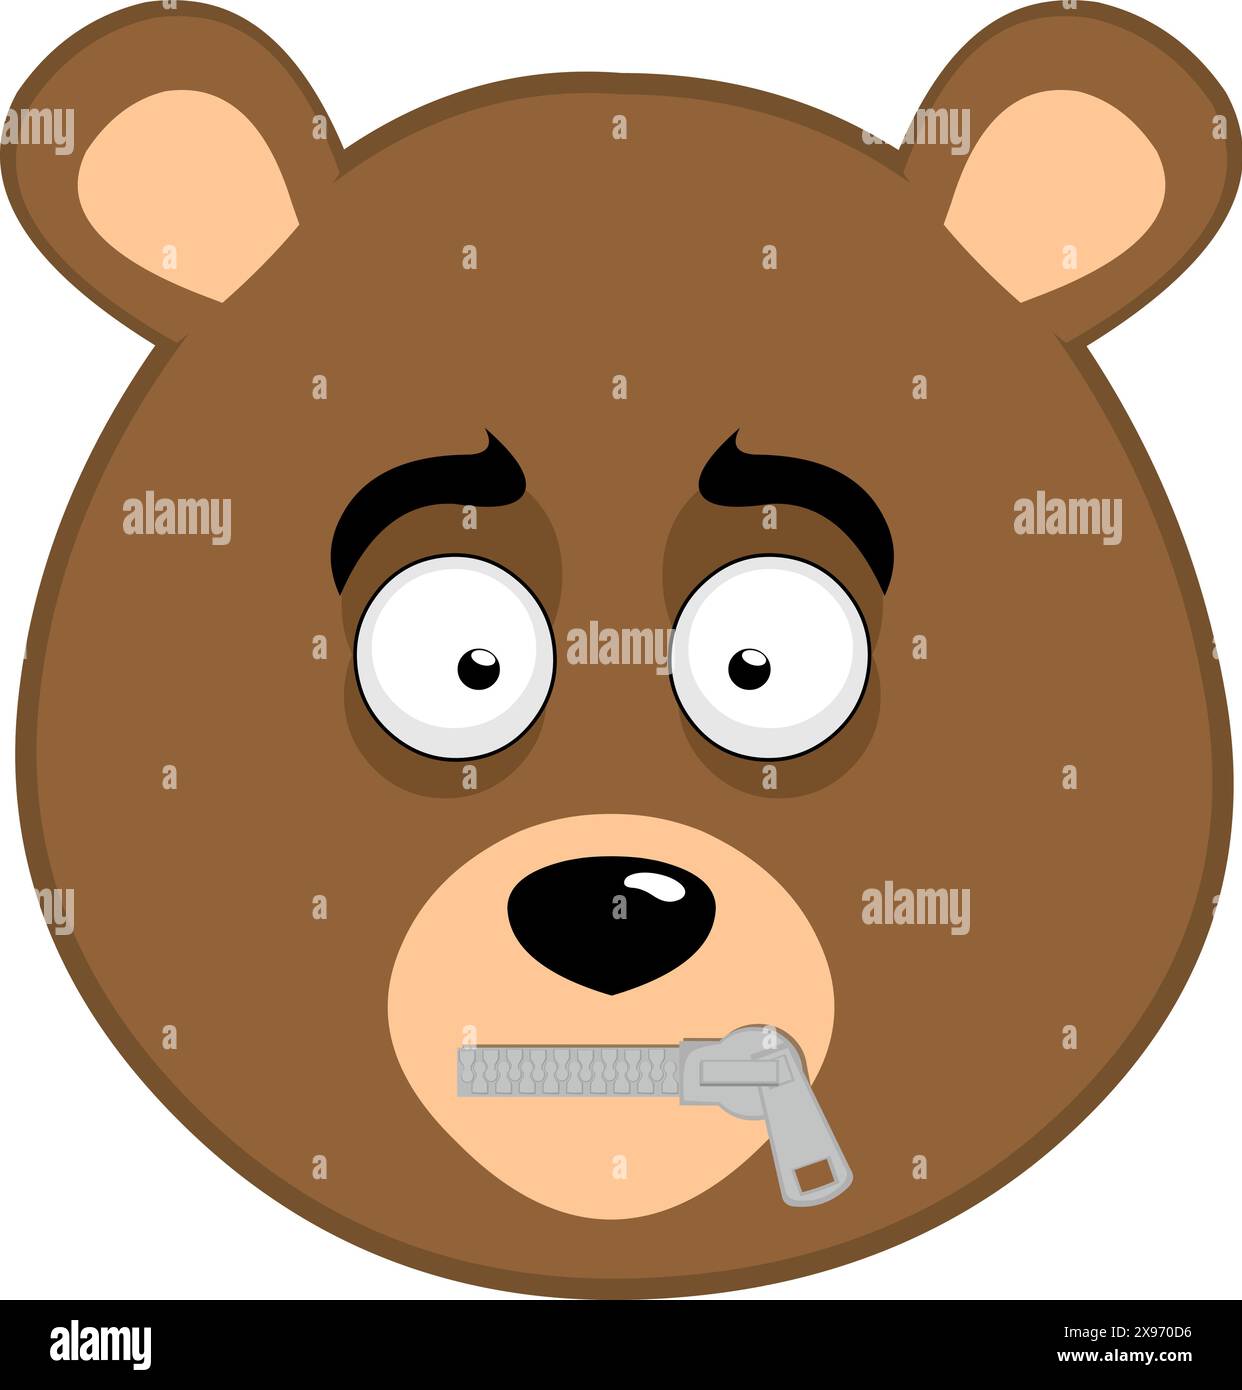 Vektor-Illustration Gesicht brauner Bär Grizzly Cartoon, mit einem Reißverschluss im Mund im Konzept der Stille Stock Vektor